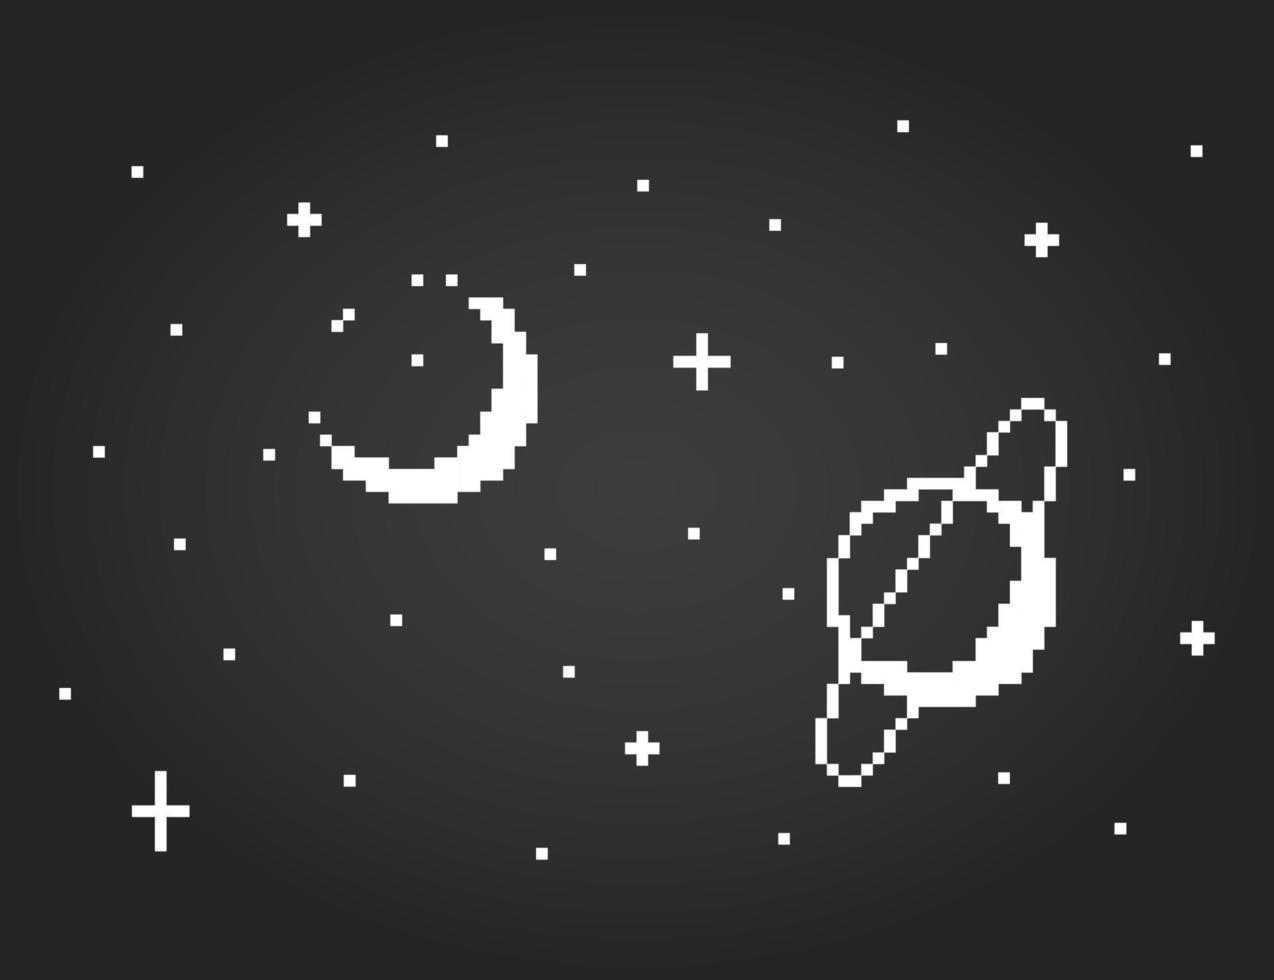 8 bit di spazio pixel. pixel galassia per risorse di gioco e schemi a punto croce nelle illustrazioni vettoriali. vettore